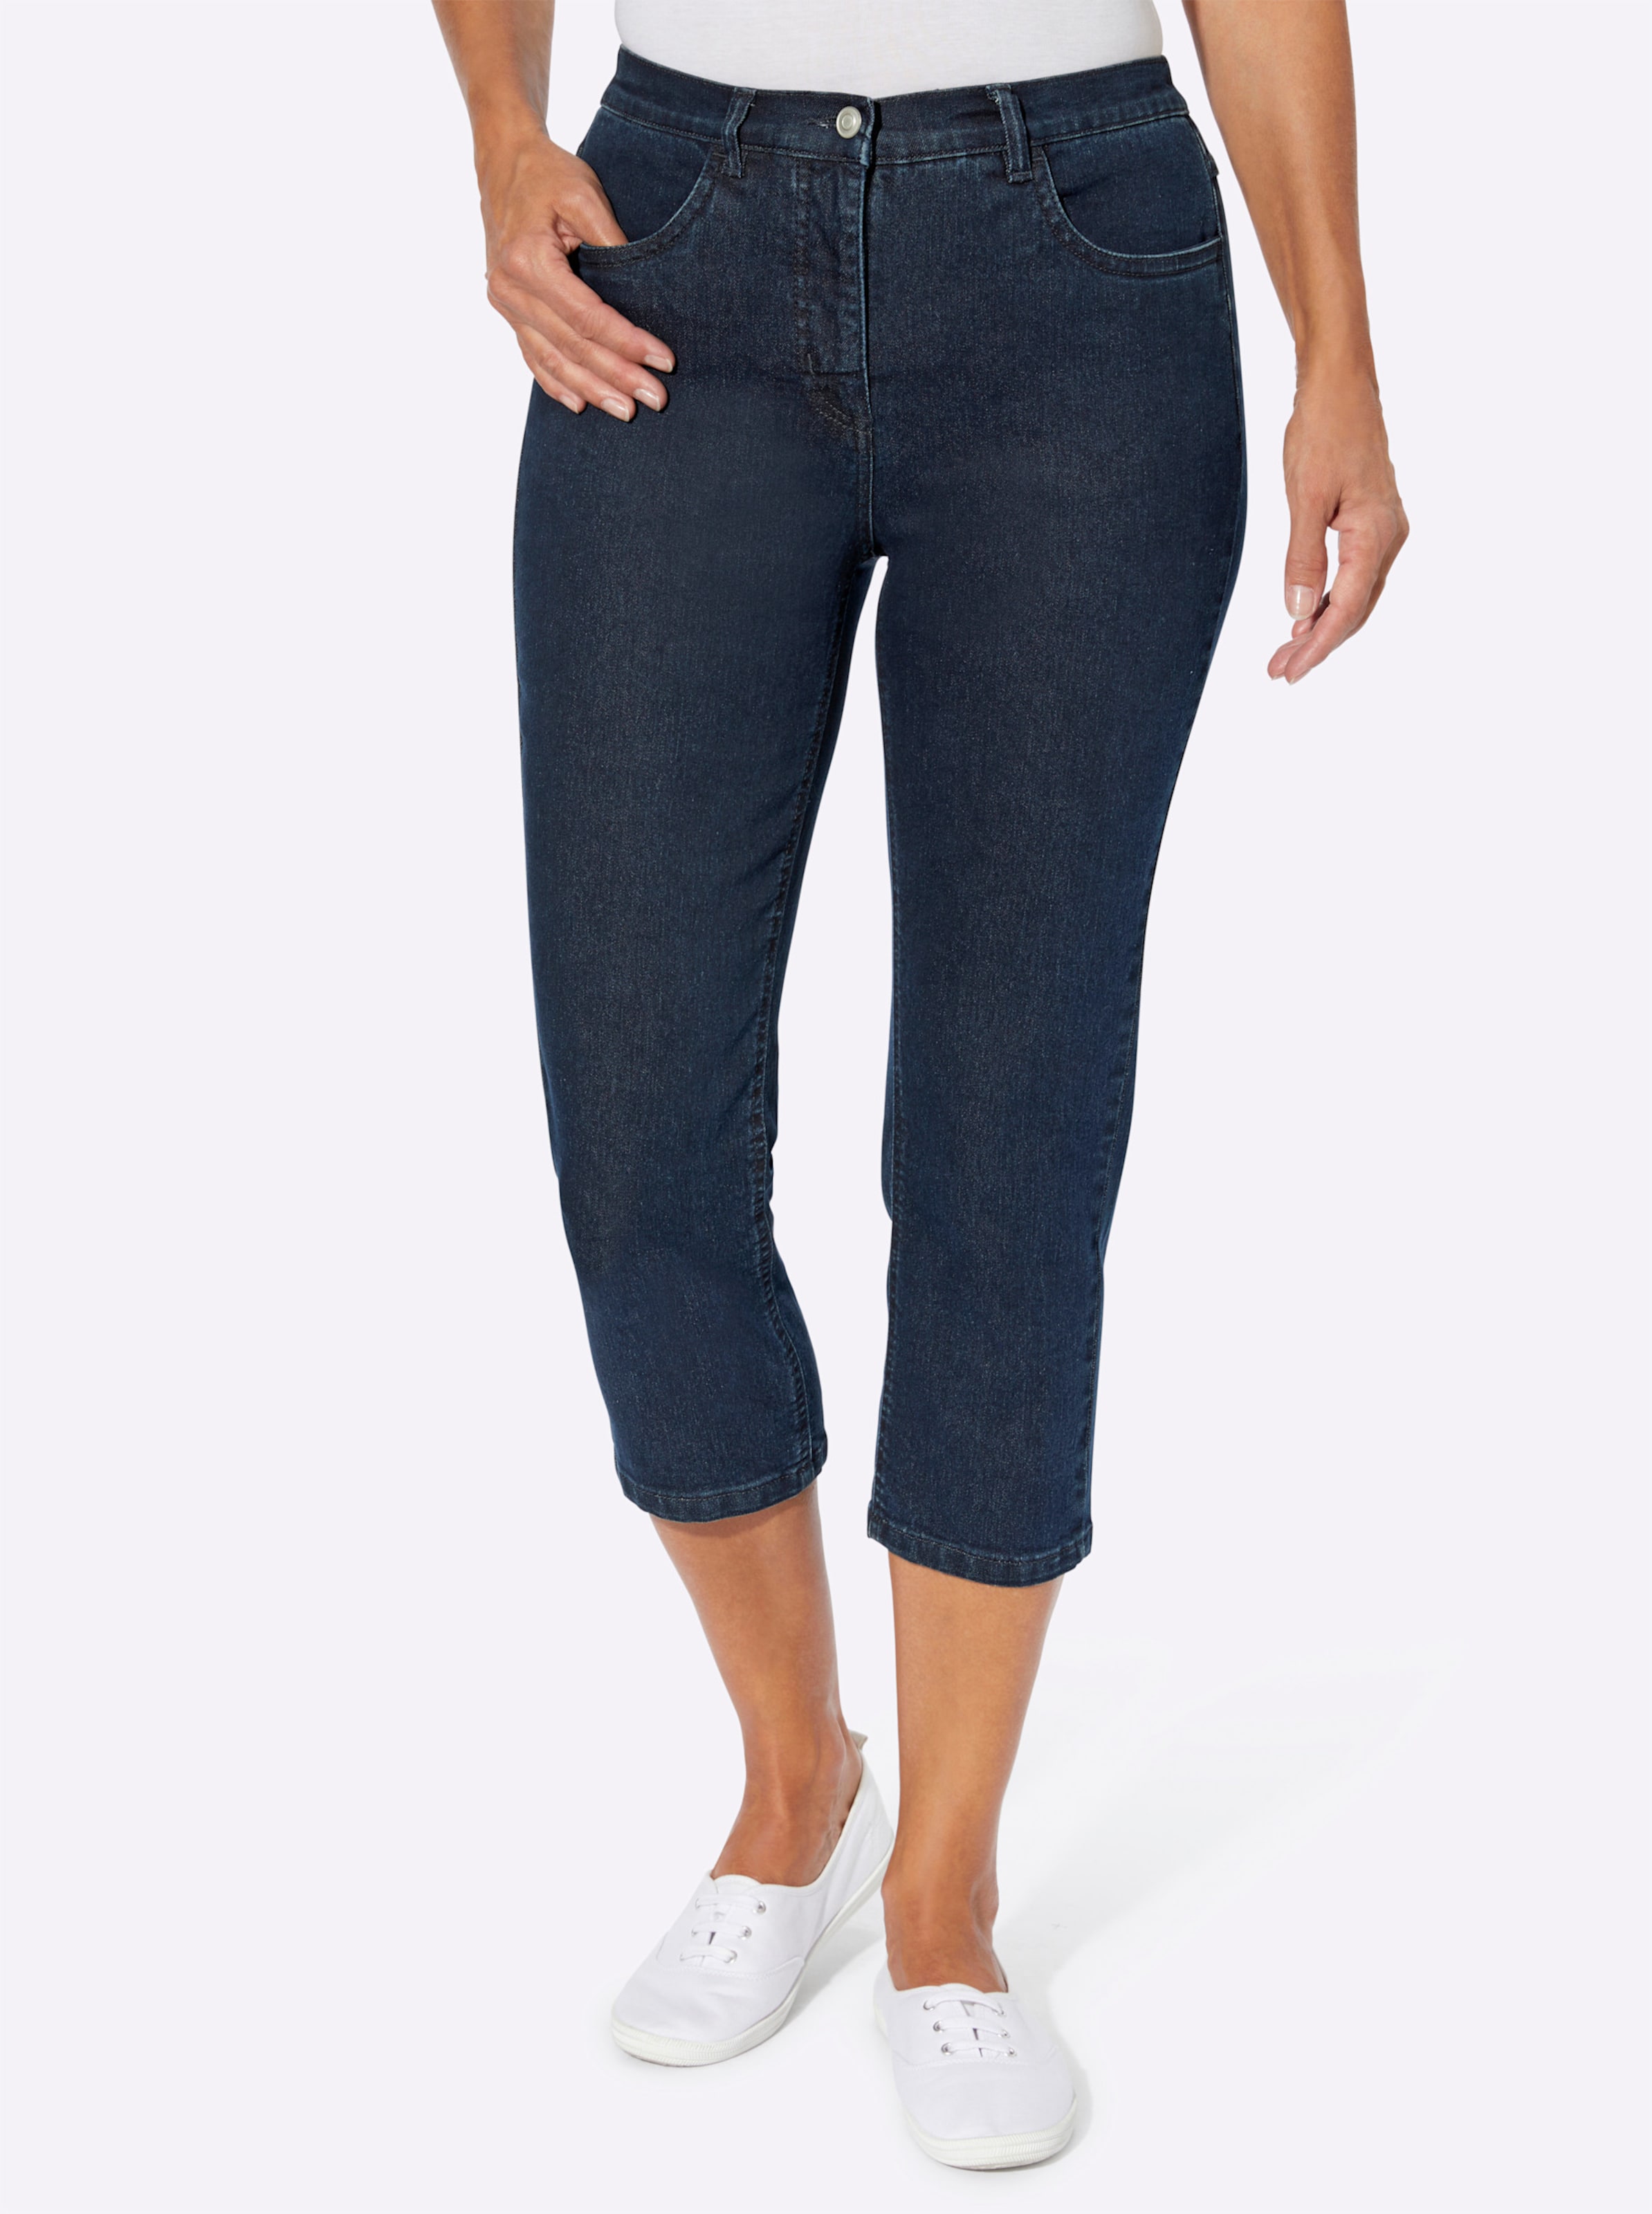 Witt Damen 3/4-Jeans mit Zier-Schnürungen, dark blue-denim